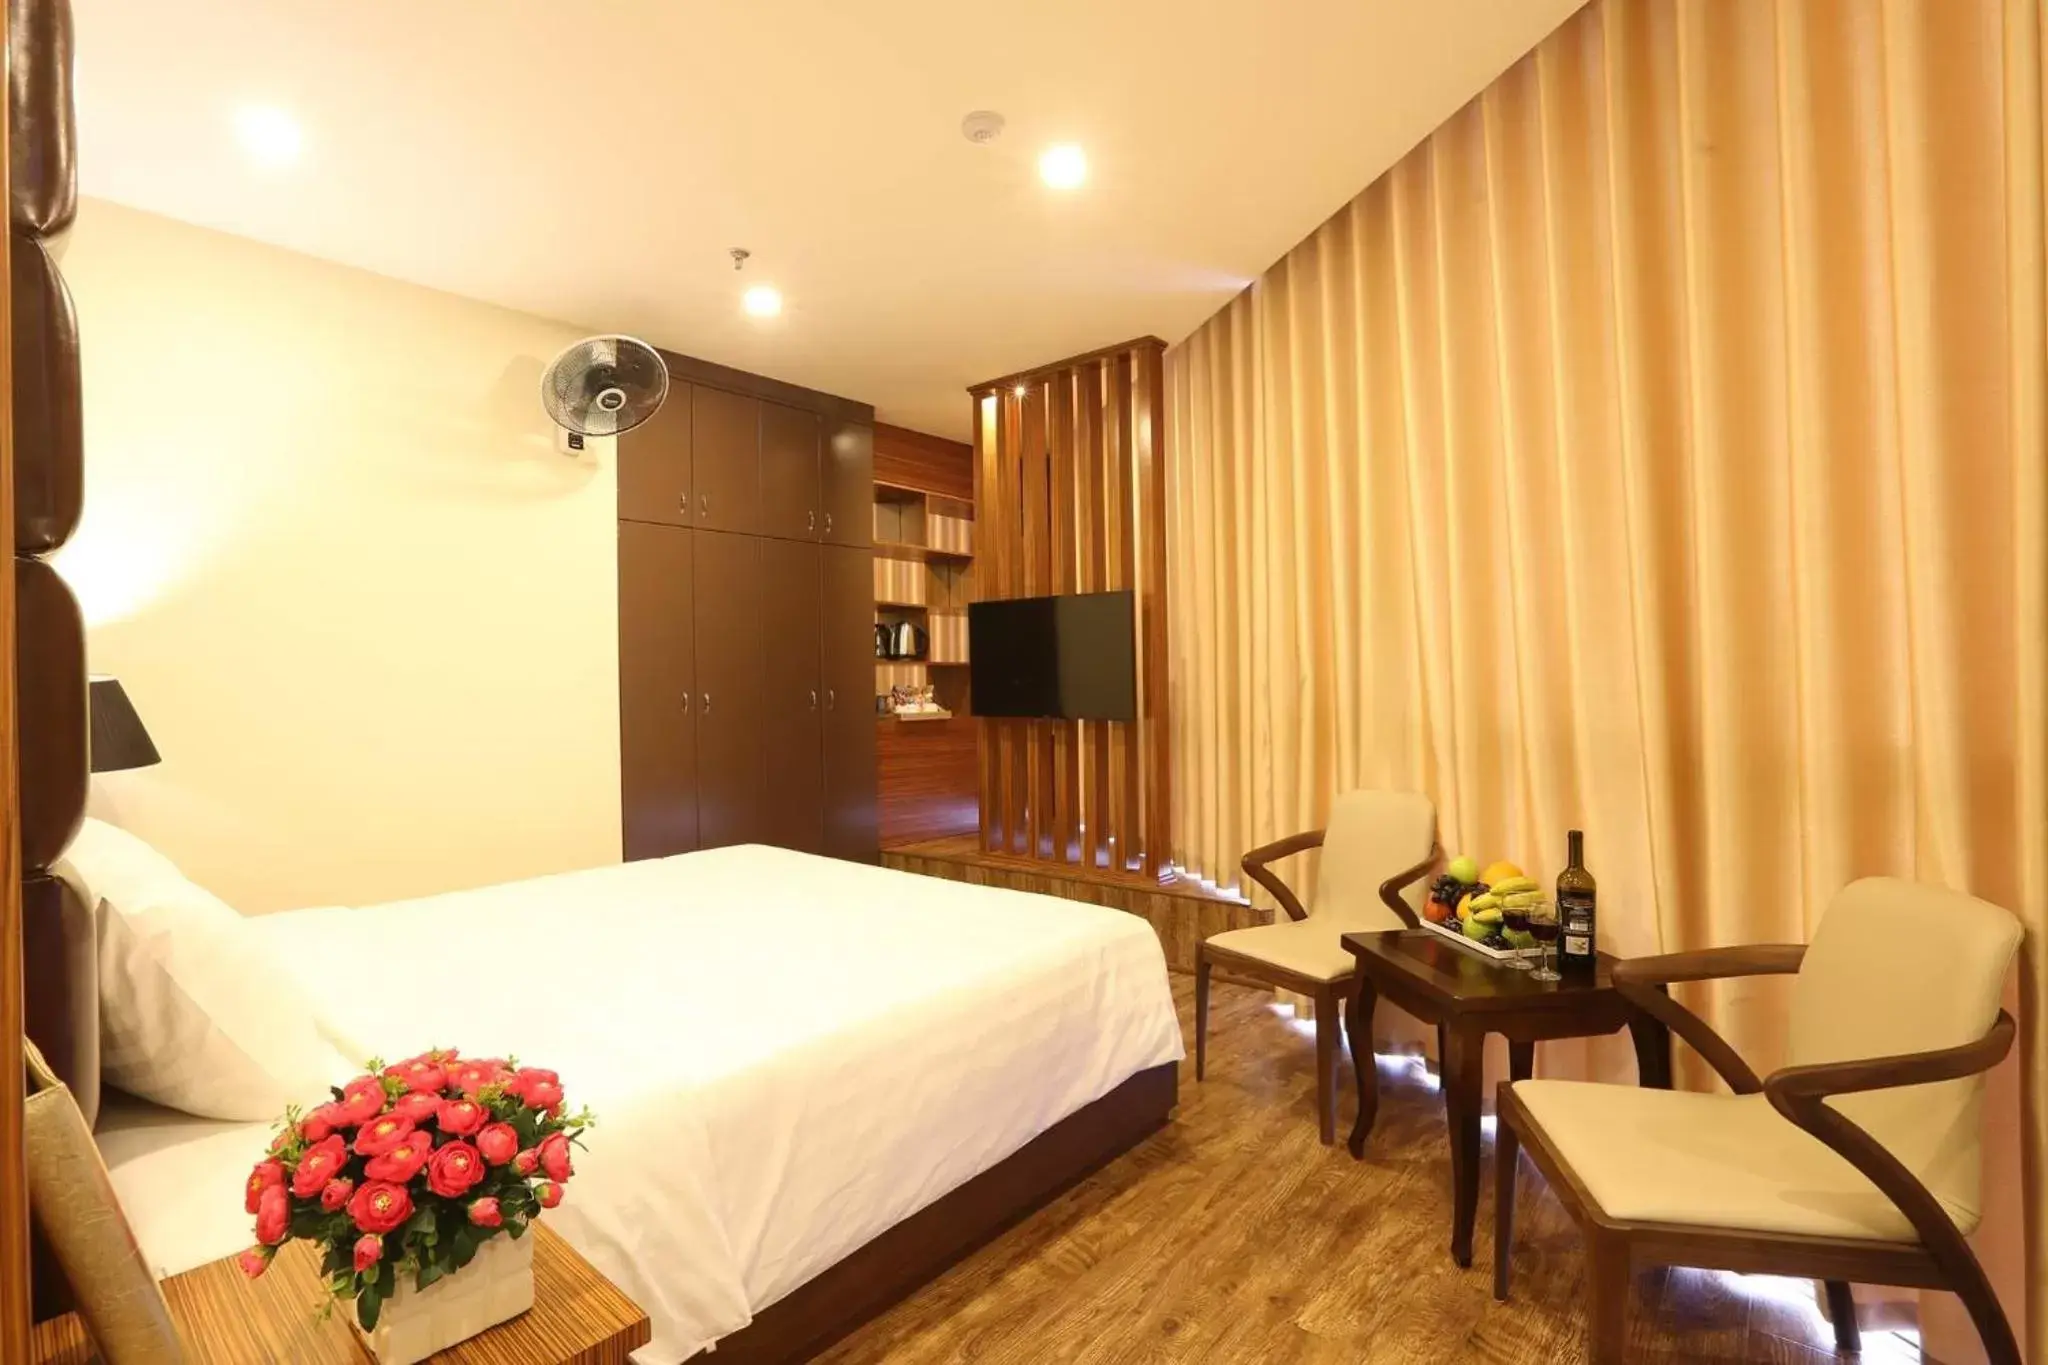 Bedroom in Au Viet Hotel